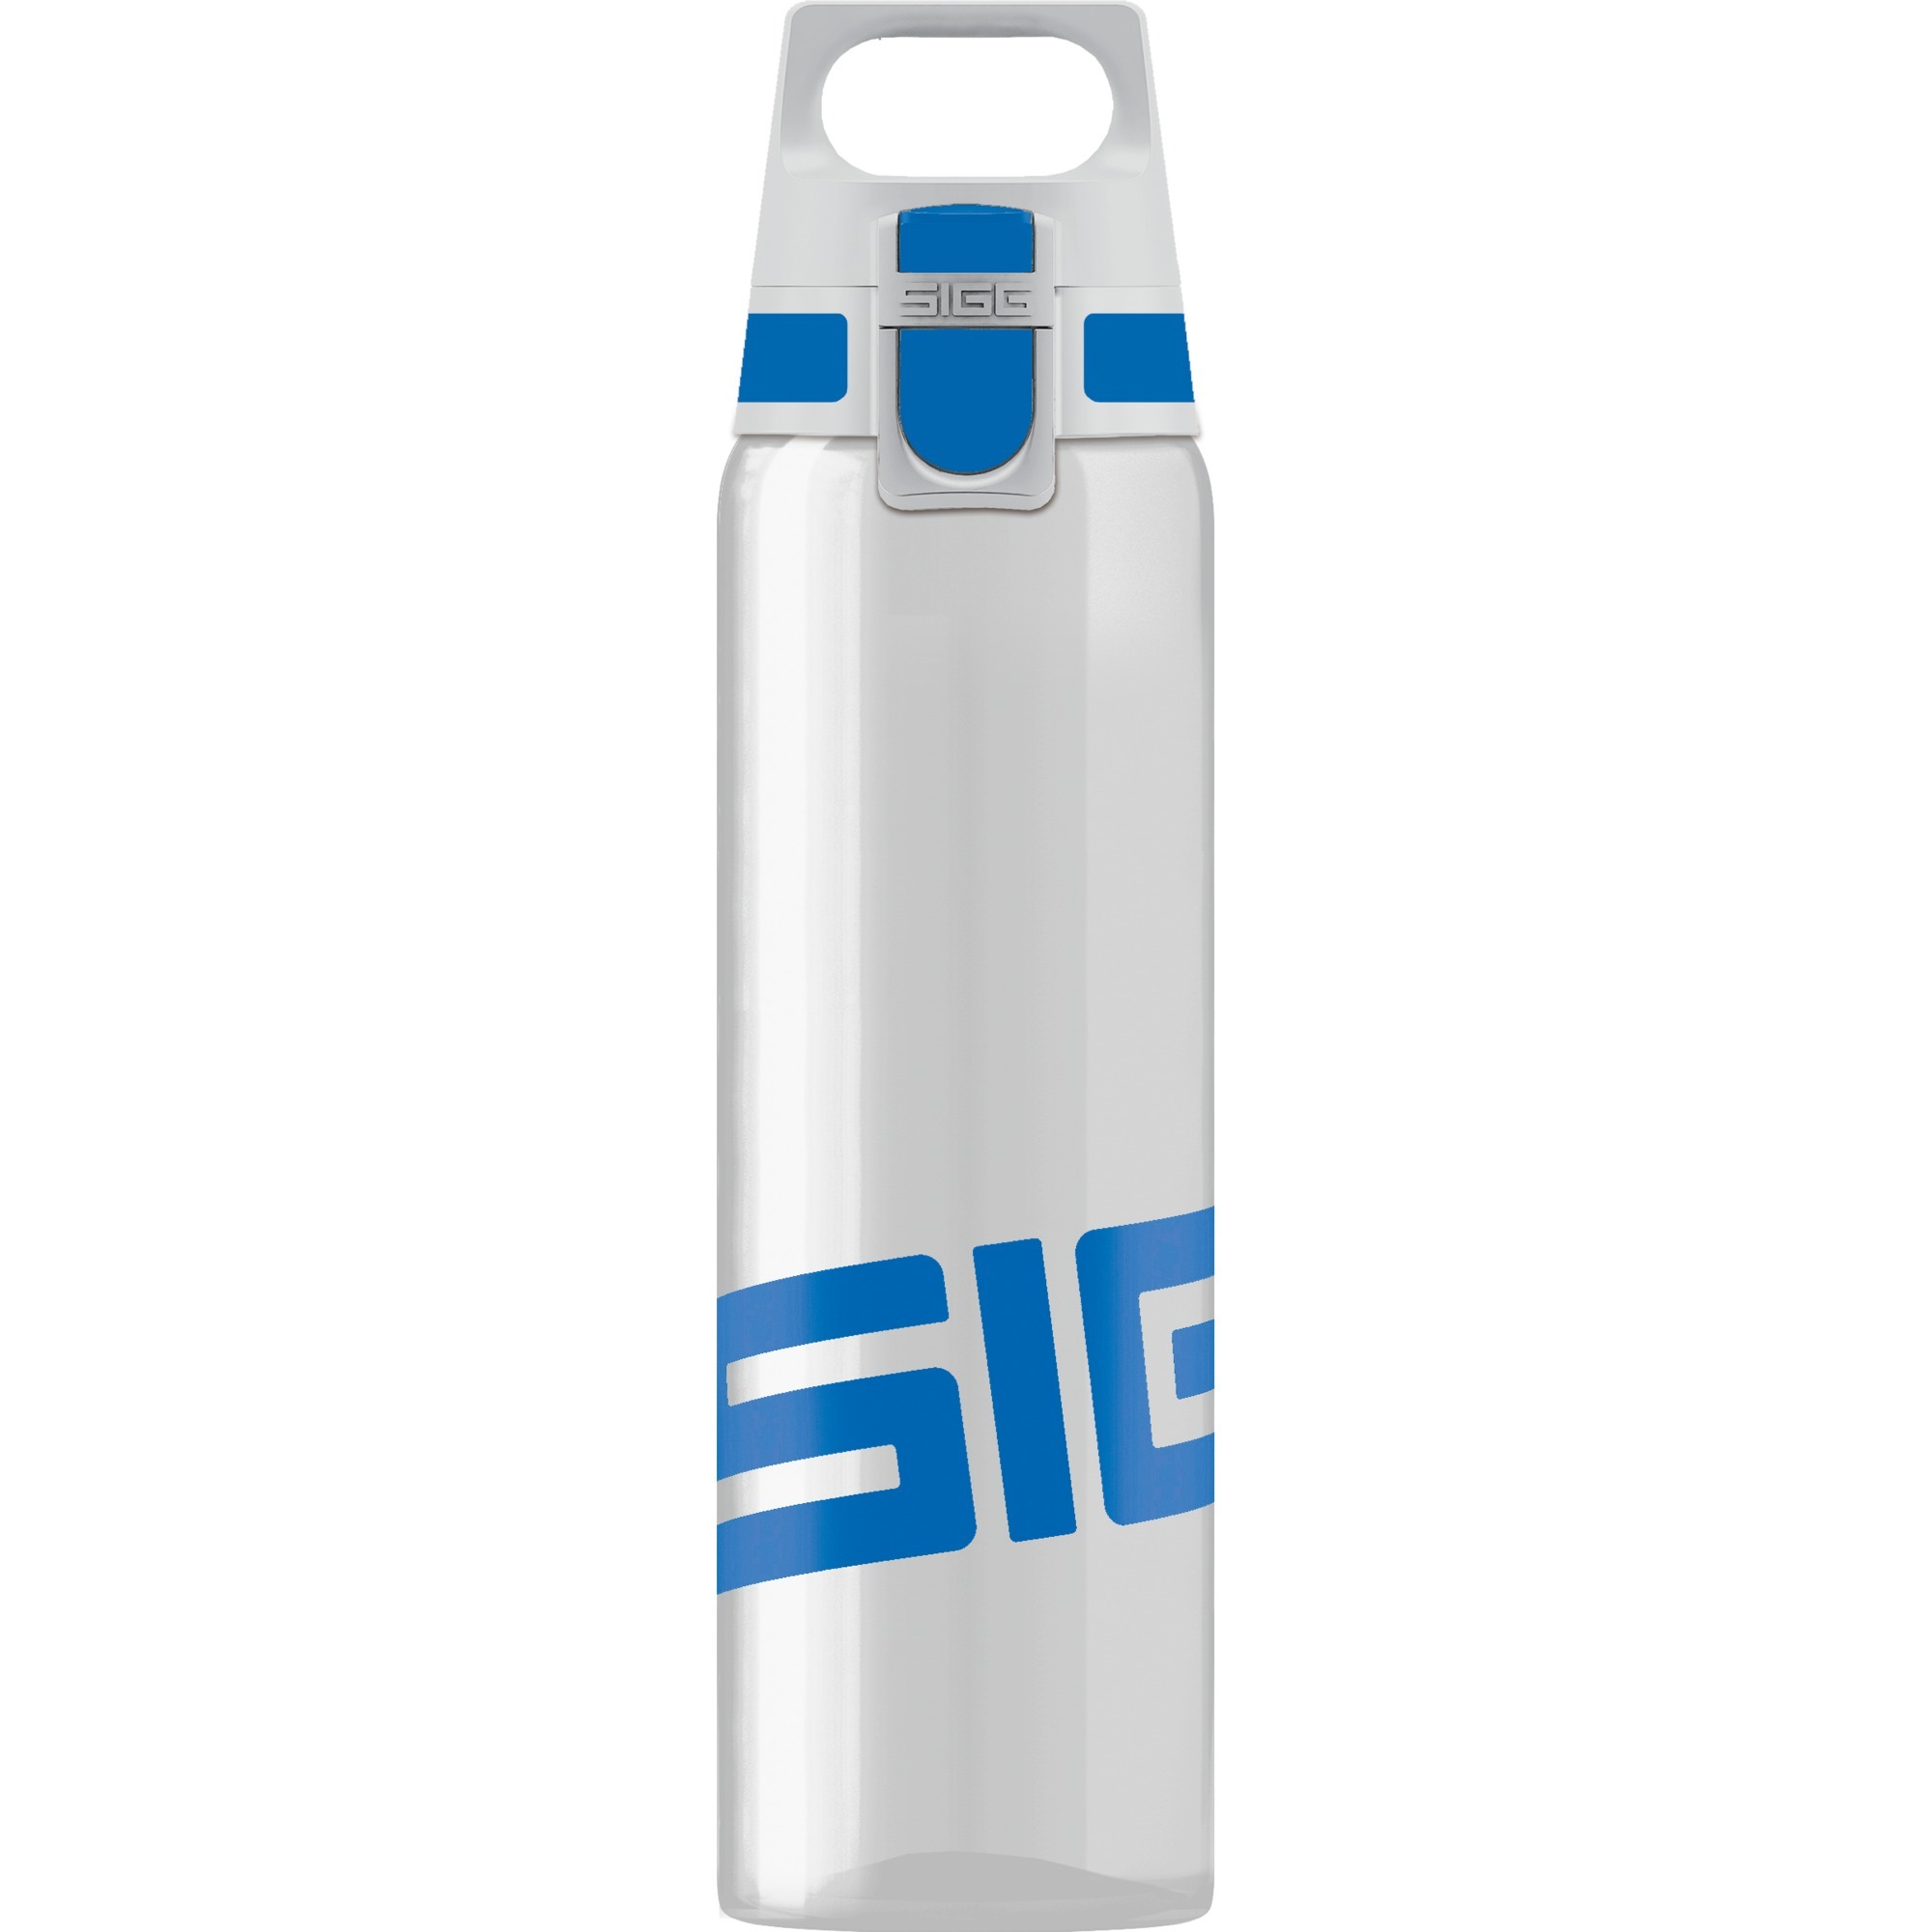 Image of Alternate - Total Clear One Blue 0,75 Liter, Trinkflasche online einkaufen bei Alternate